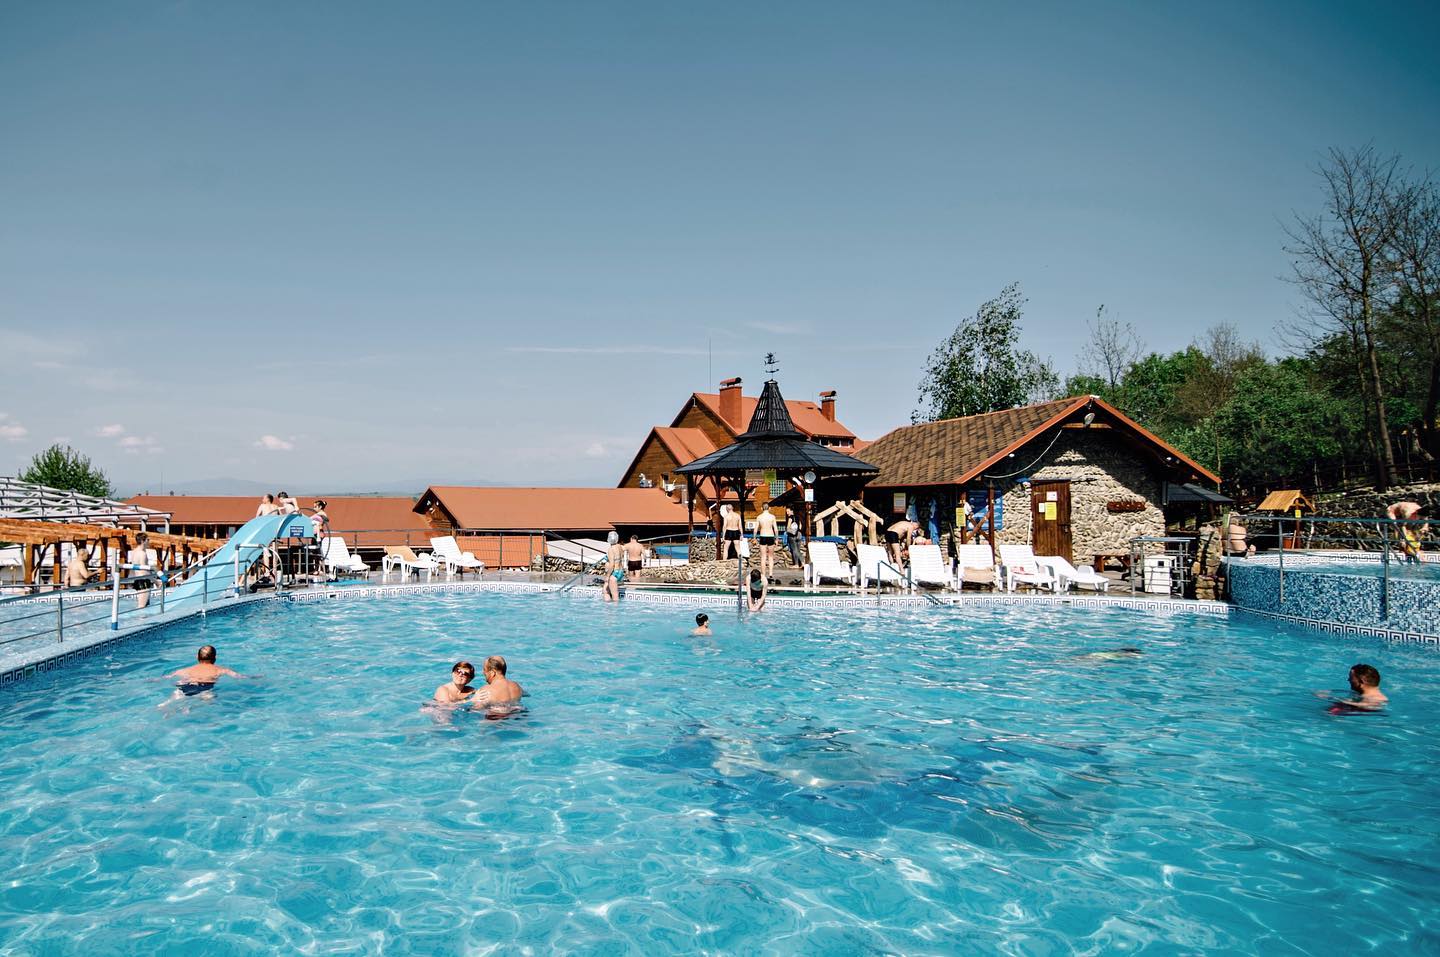 Термальні води Велятино ціни - 2022, термальний комплекс "Теплі води", це популярне місце відпочинку з басейнами, ціни на купання від 150 грн з людини.